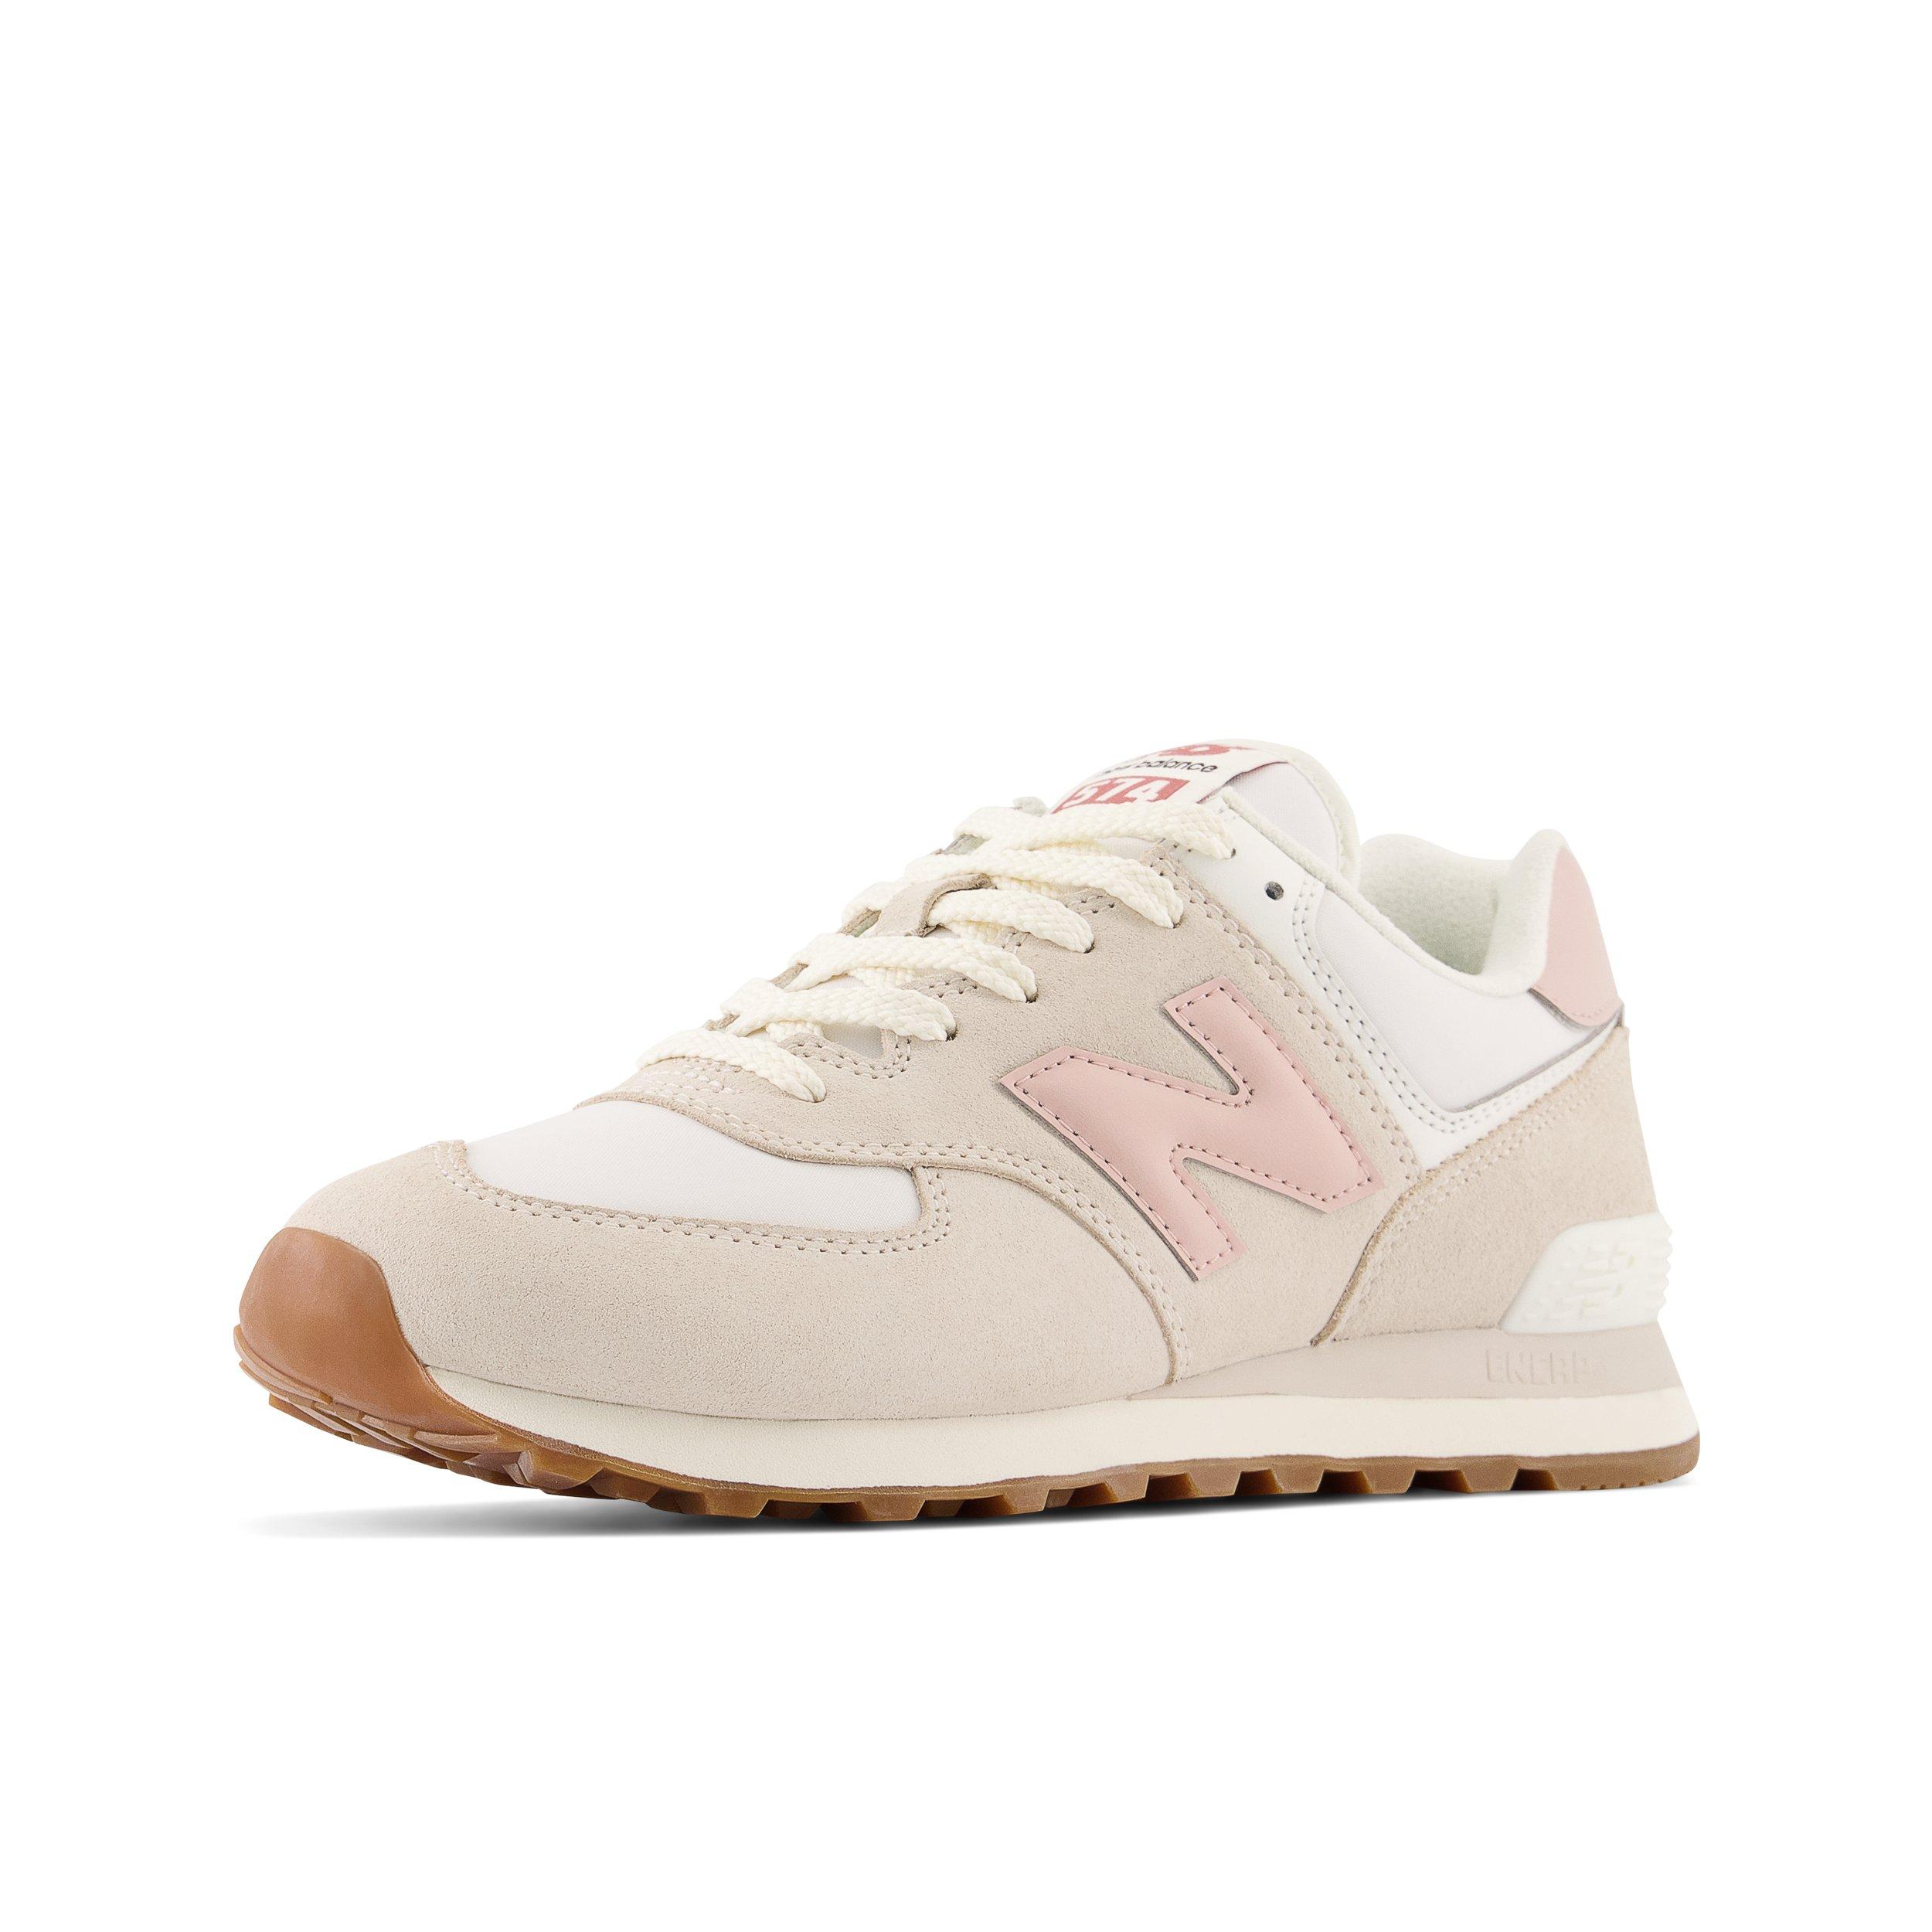 Balance 574 "White/Pink" Unisex Shoe